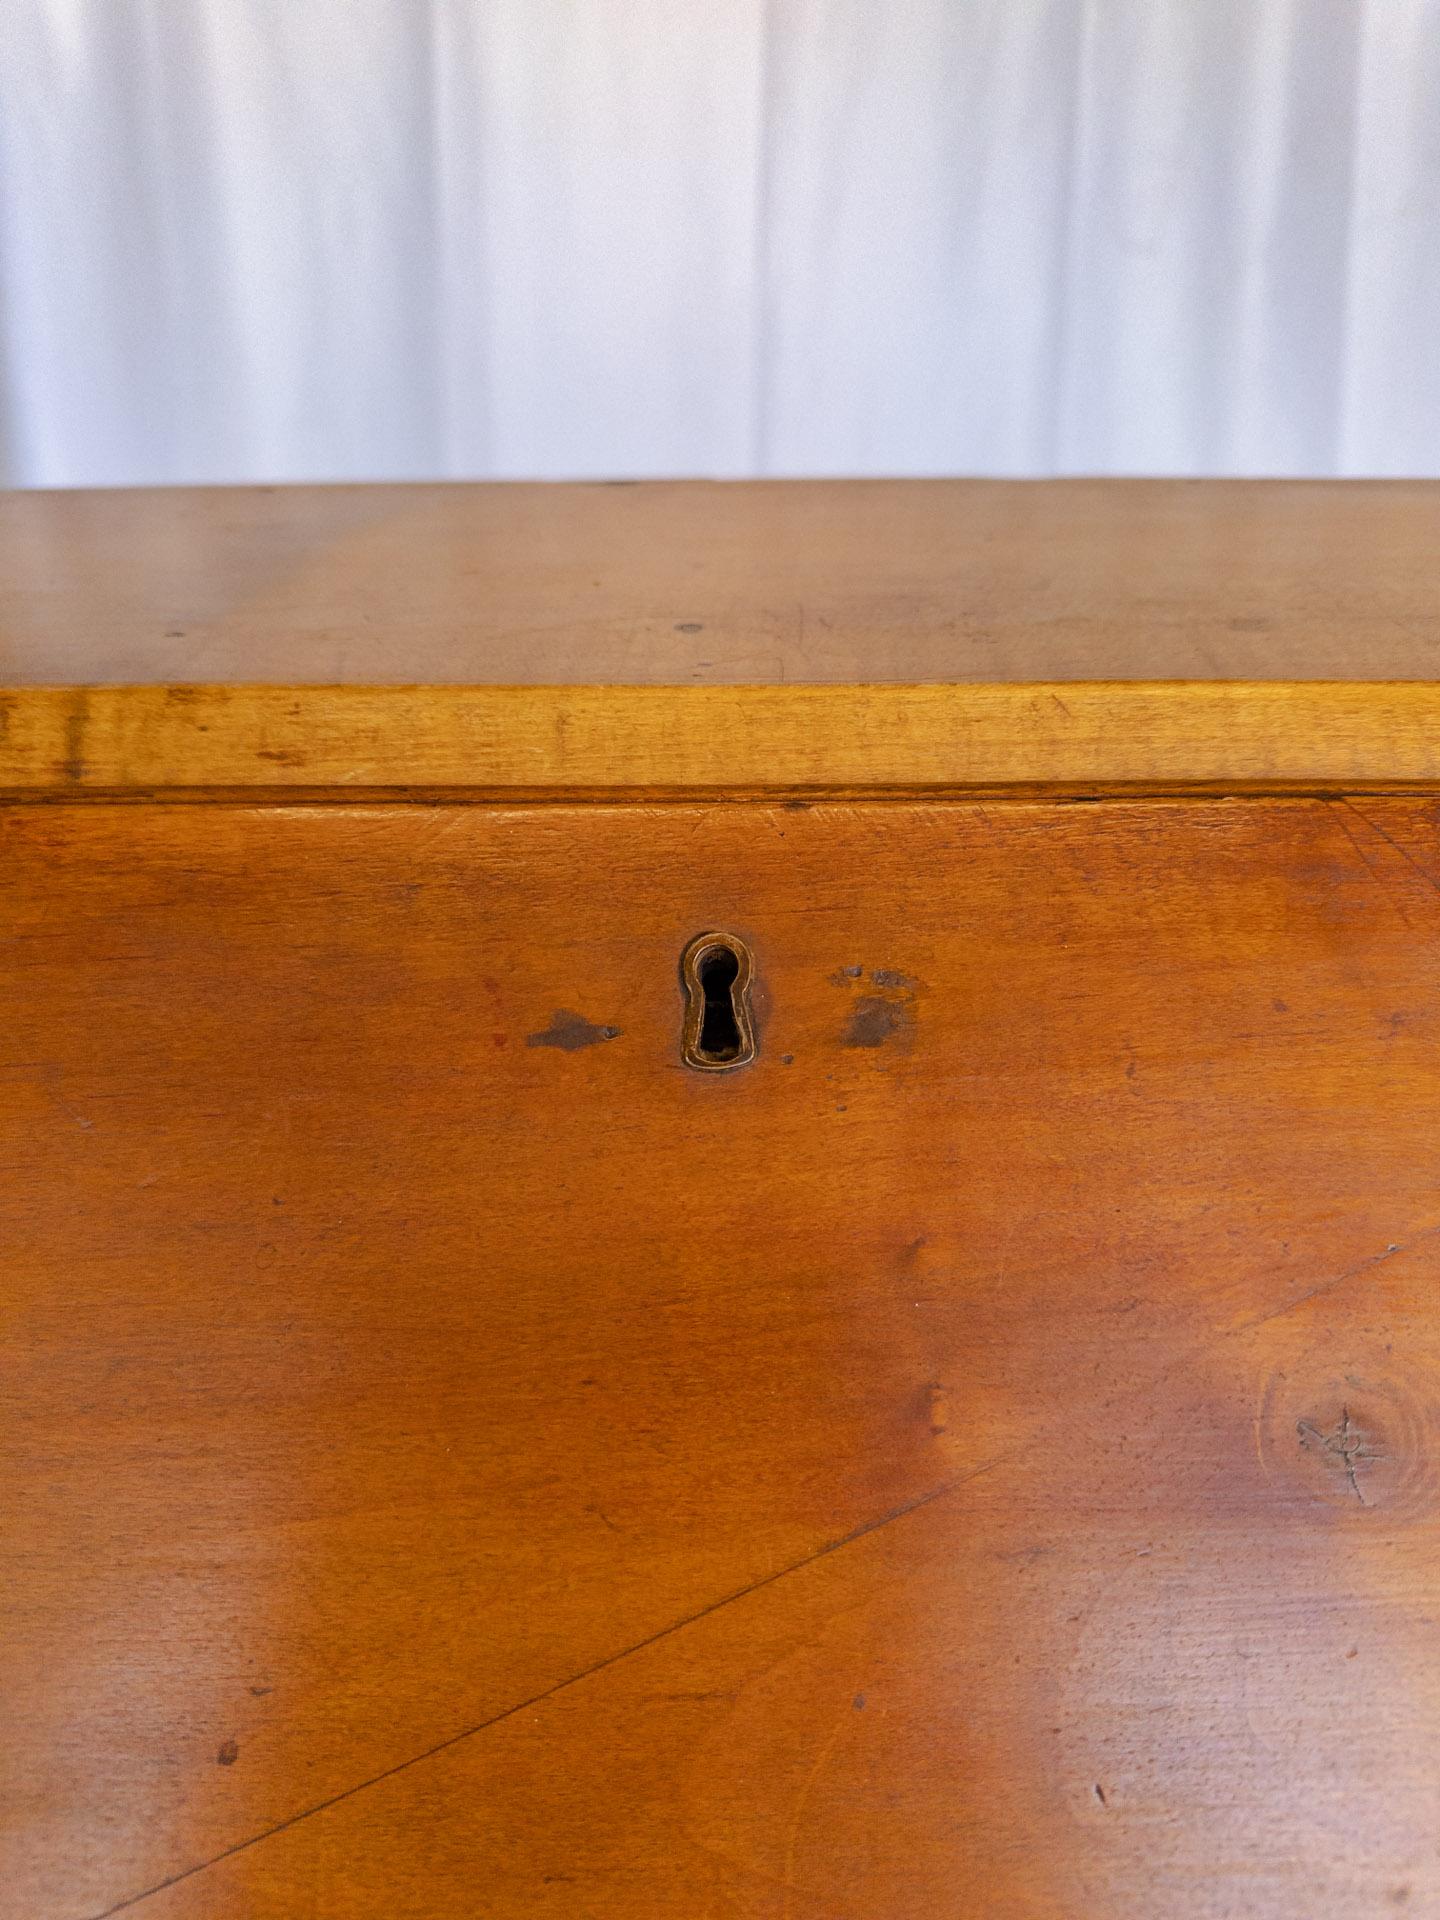 Der amerikanische Chippendale-Ahorn-Schrägfront-Sekretär/Schreibtisch aus dem 19. Jahrhundert ist ein Zeugnis für die sorgfältige Kunstfertigkeit und die zeitlose Anziehungskraft traditioneller Handwerkskunst. Das sorgfältig aus feinstem Ahornholz